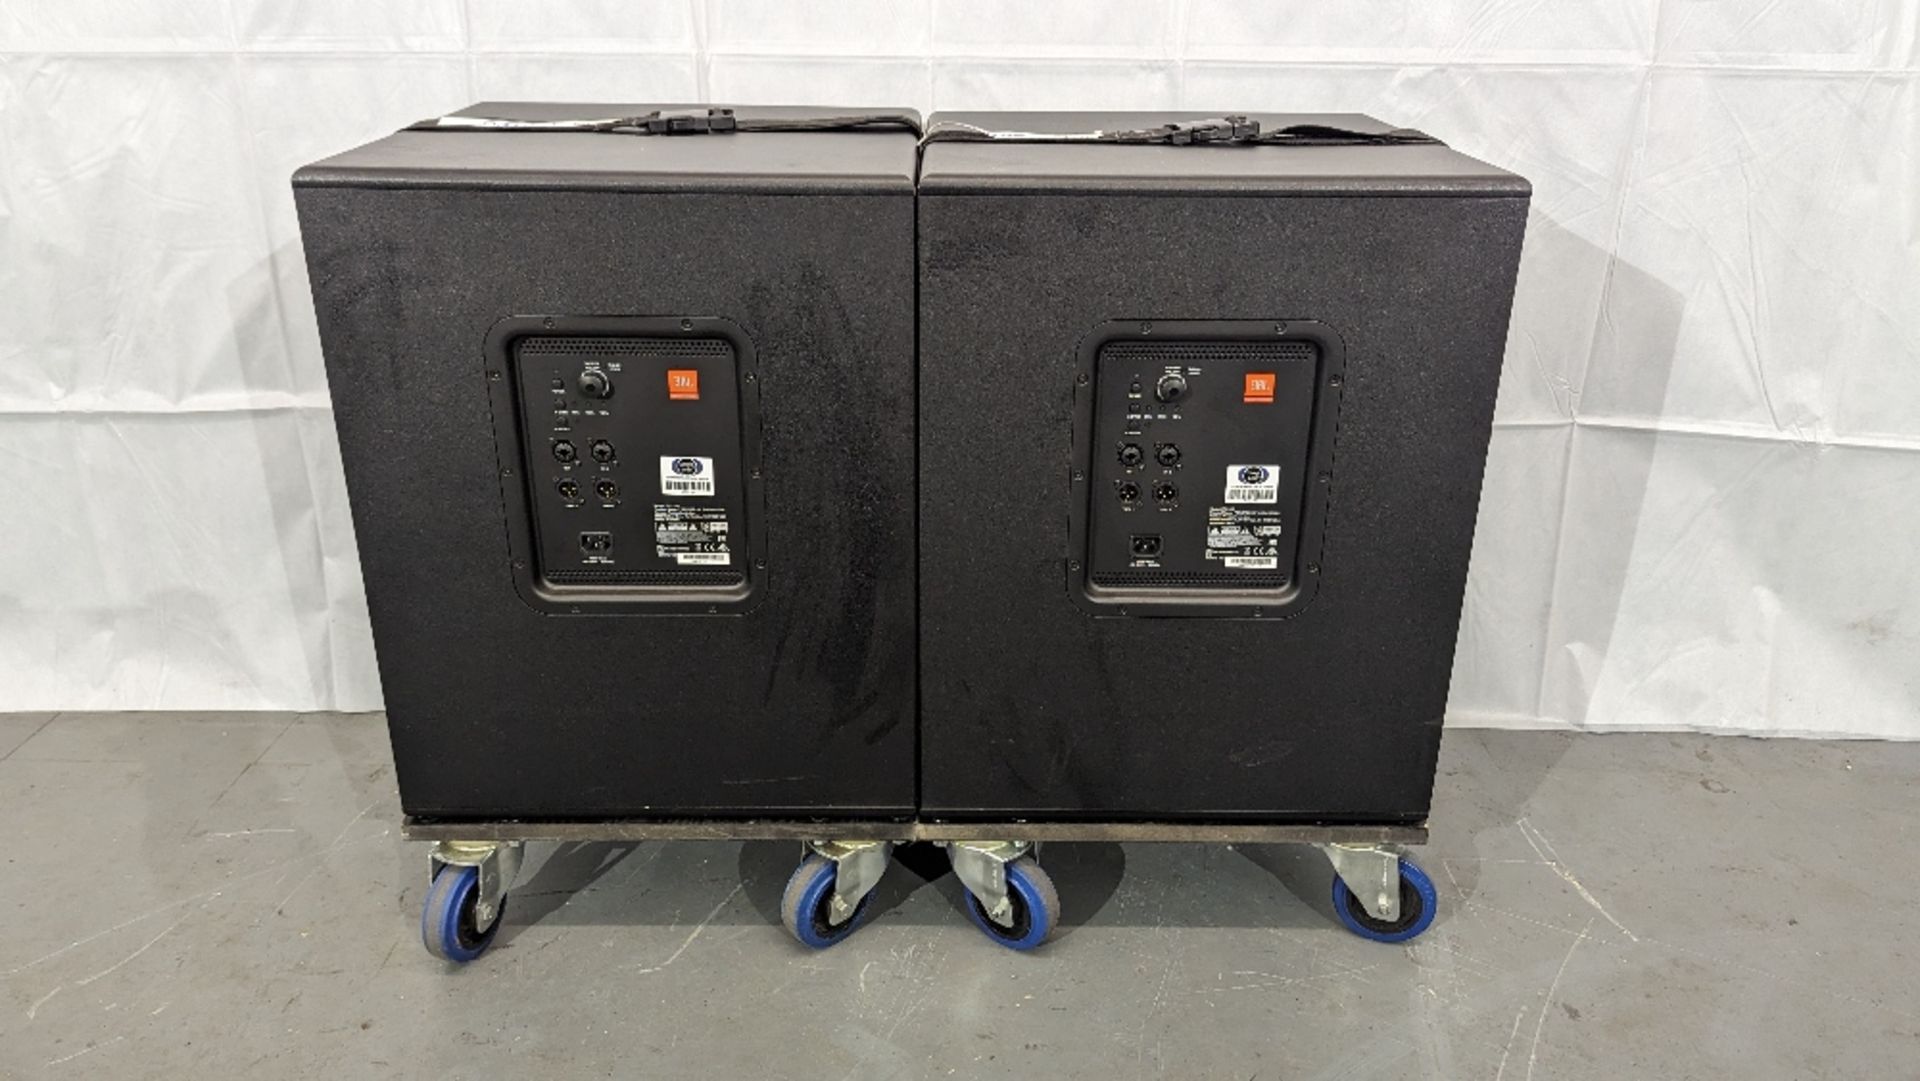 JBL PA Sound System - (2) JBL IRX112BT Speakers, (2) JBL IRX115 Subs & Associated Equipment - Image 3 of 8